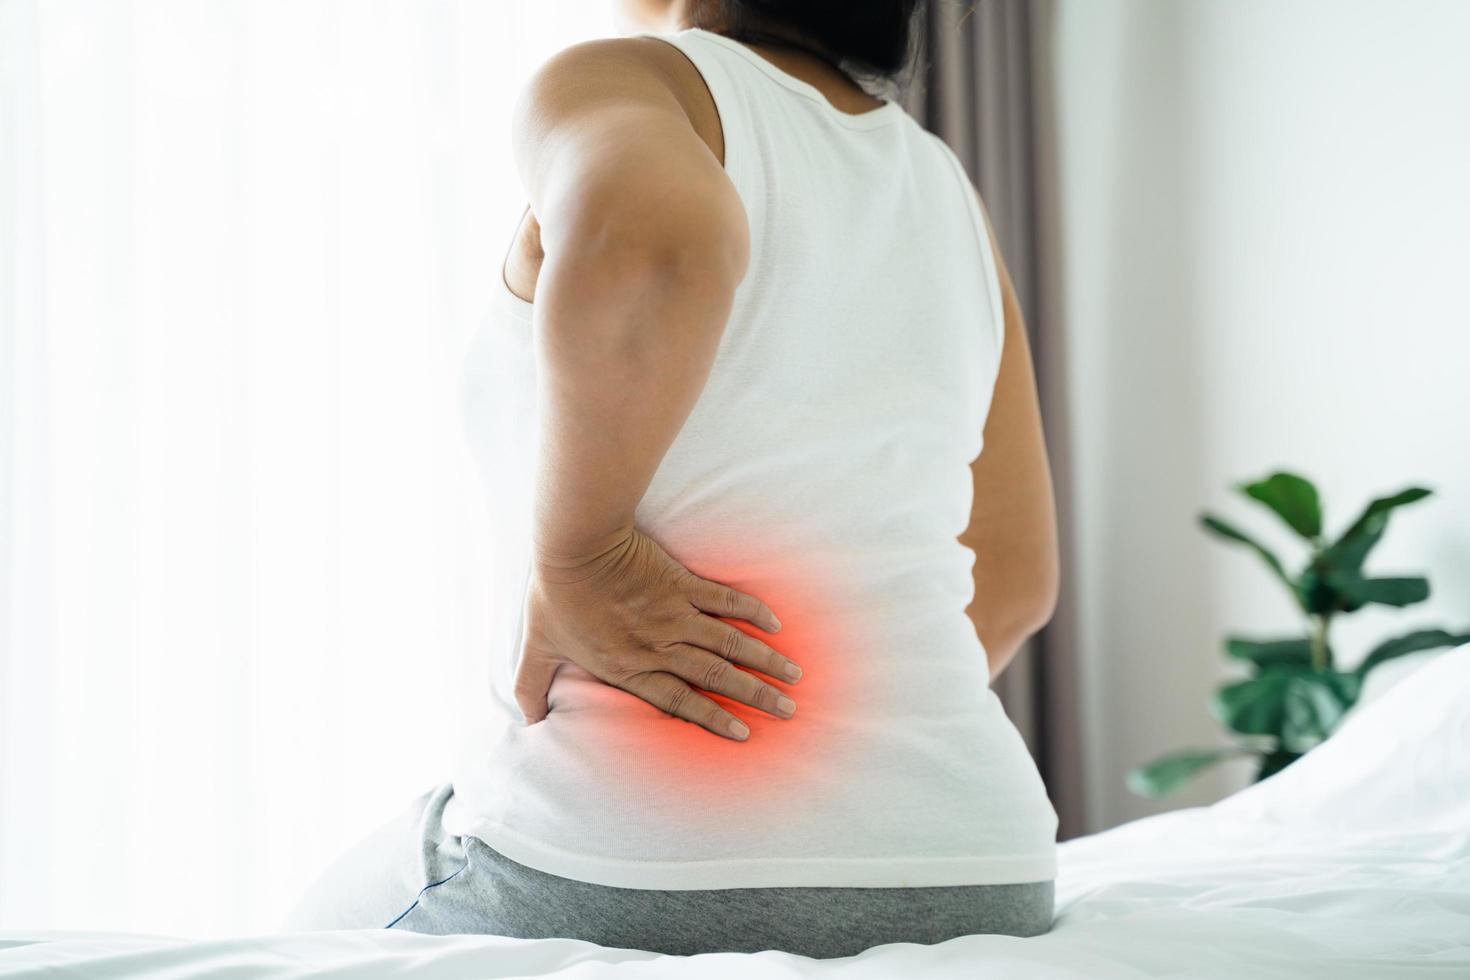 una mujer asiática adulta está sentada en la cama y sosteniendo su espalda baja que sufre de una herida en la espalda. concepto de atención médica y dolor de espalda. foto